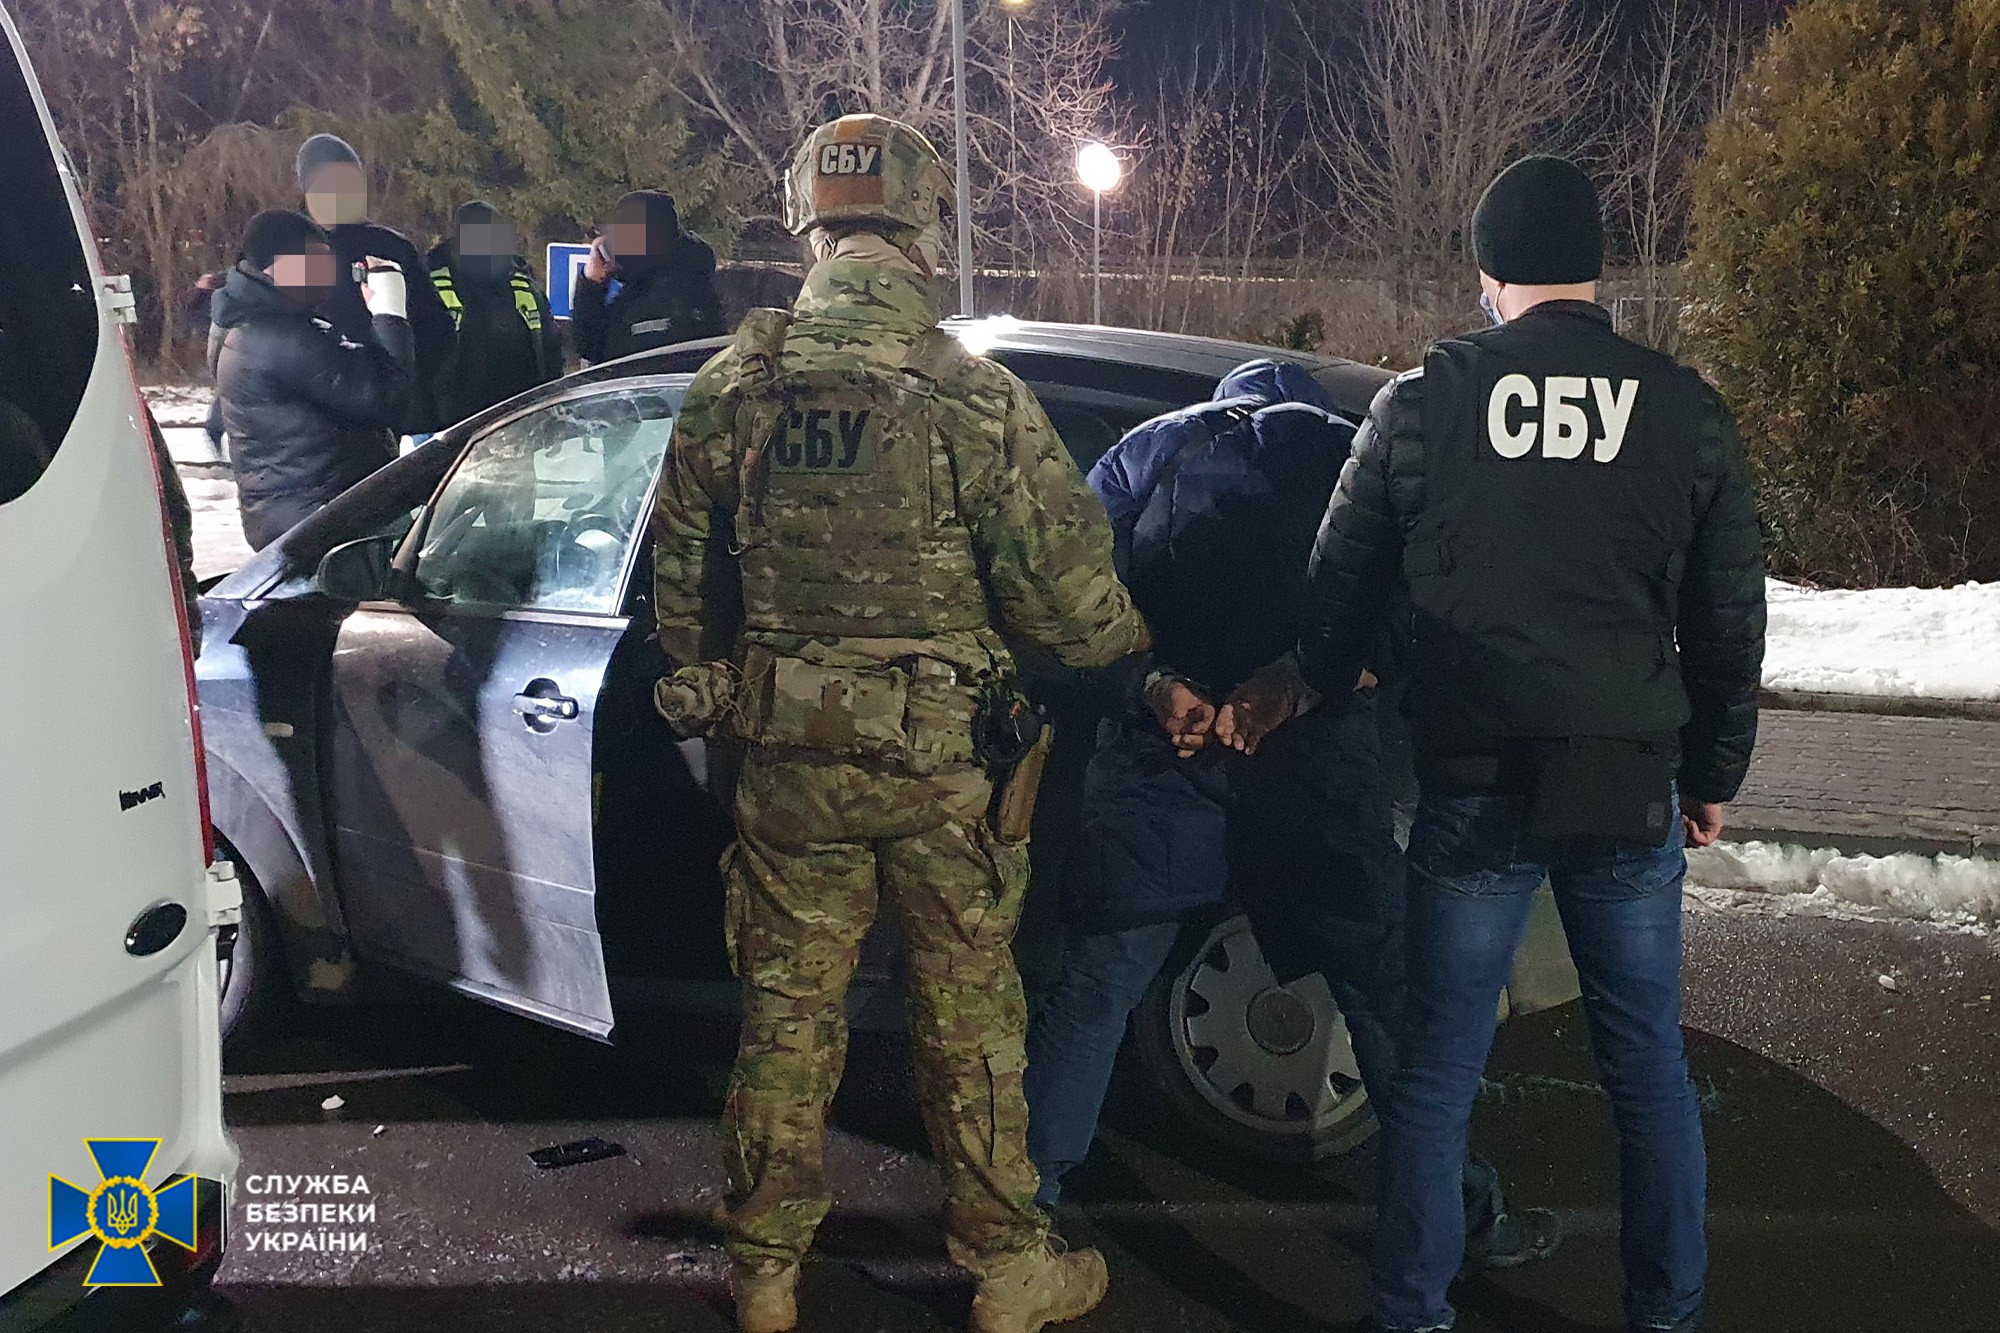 Agentes del SBU, el Servicio de Seguridad de Ucrania, deteniendo a un funcionario ucraniano colaborador de los rusos en un puesto e control cerca de Kherson. (Imagen SBU)